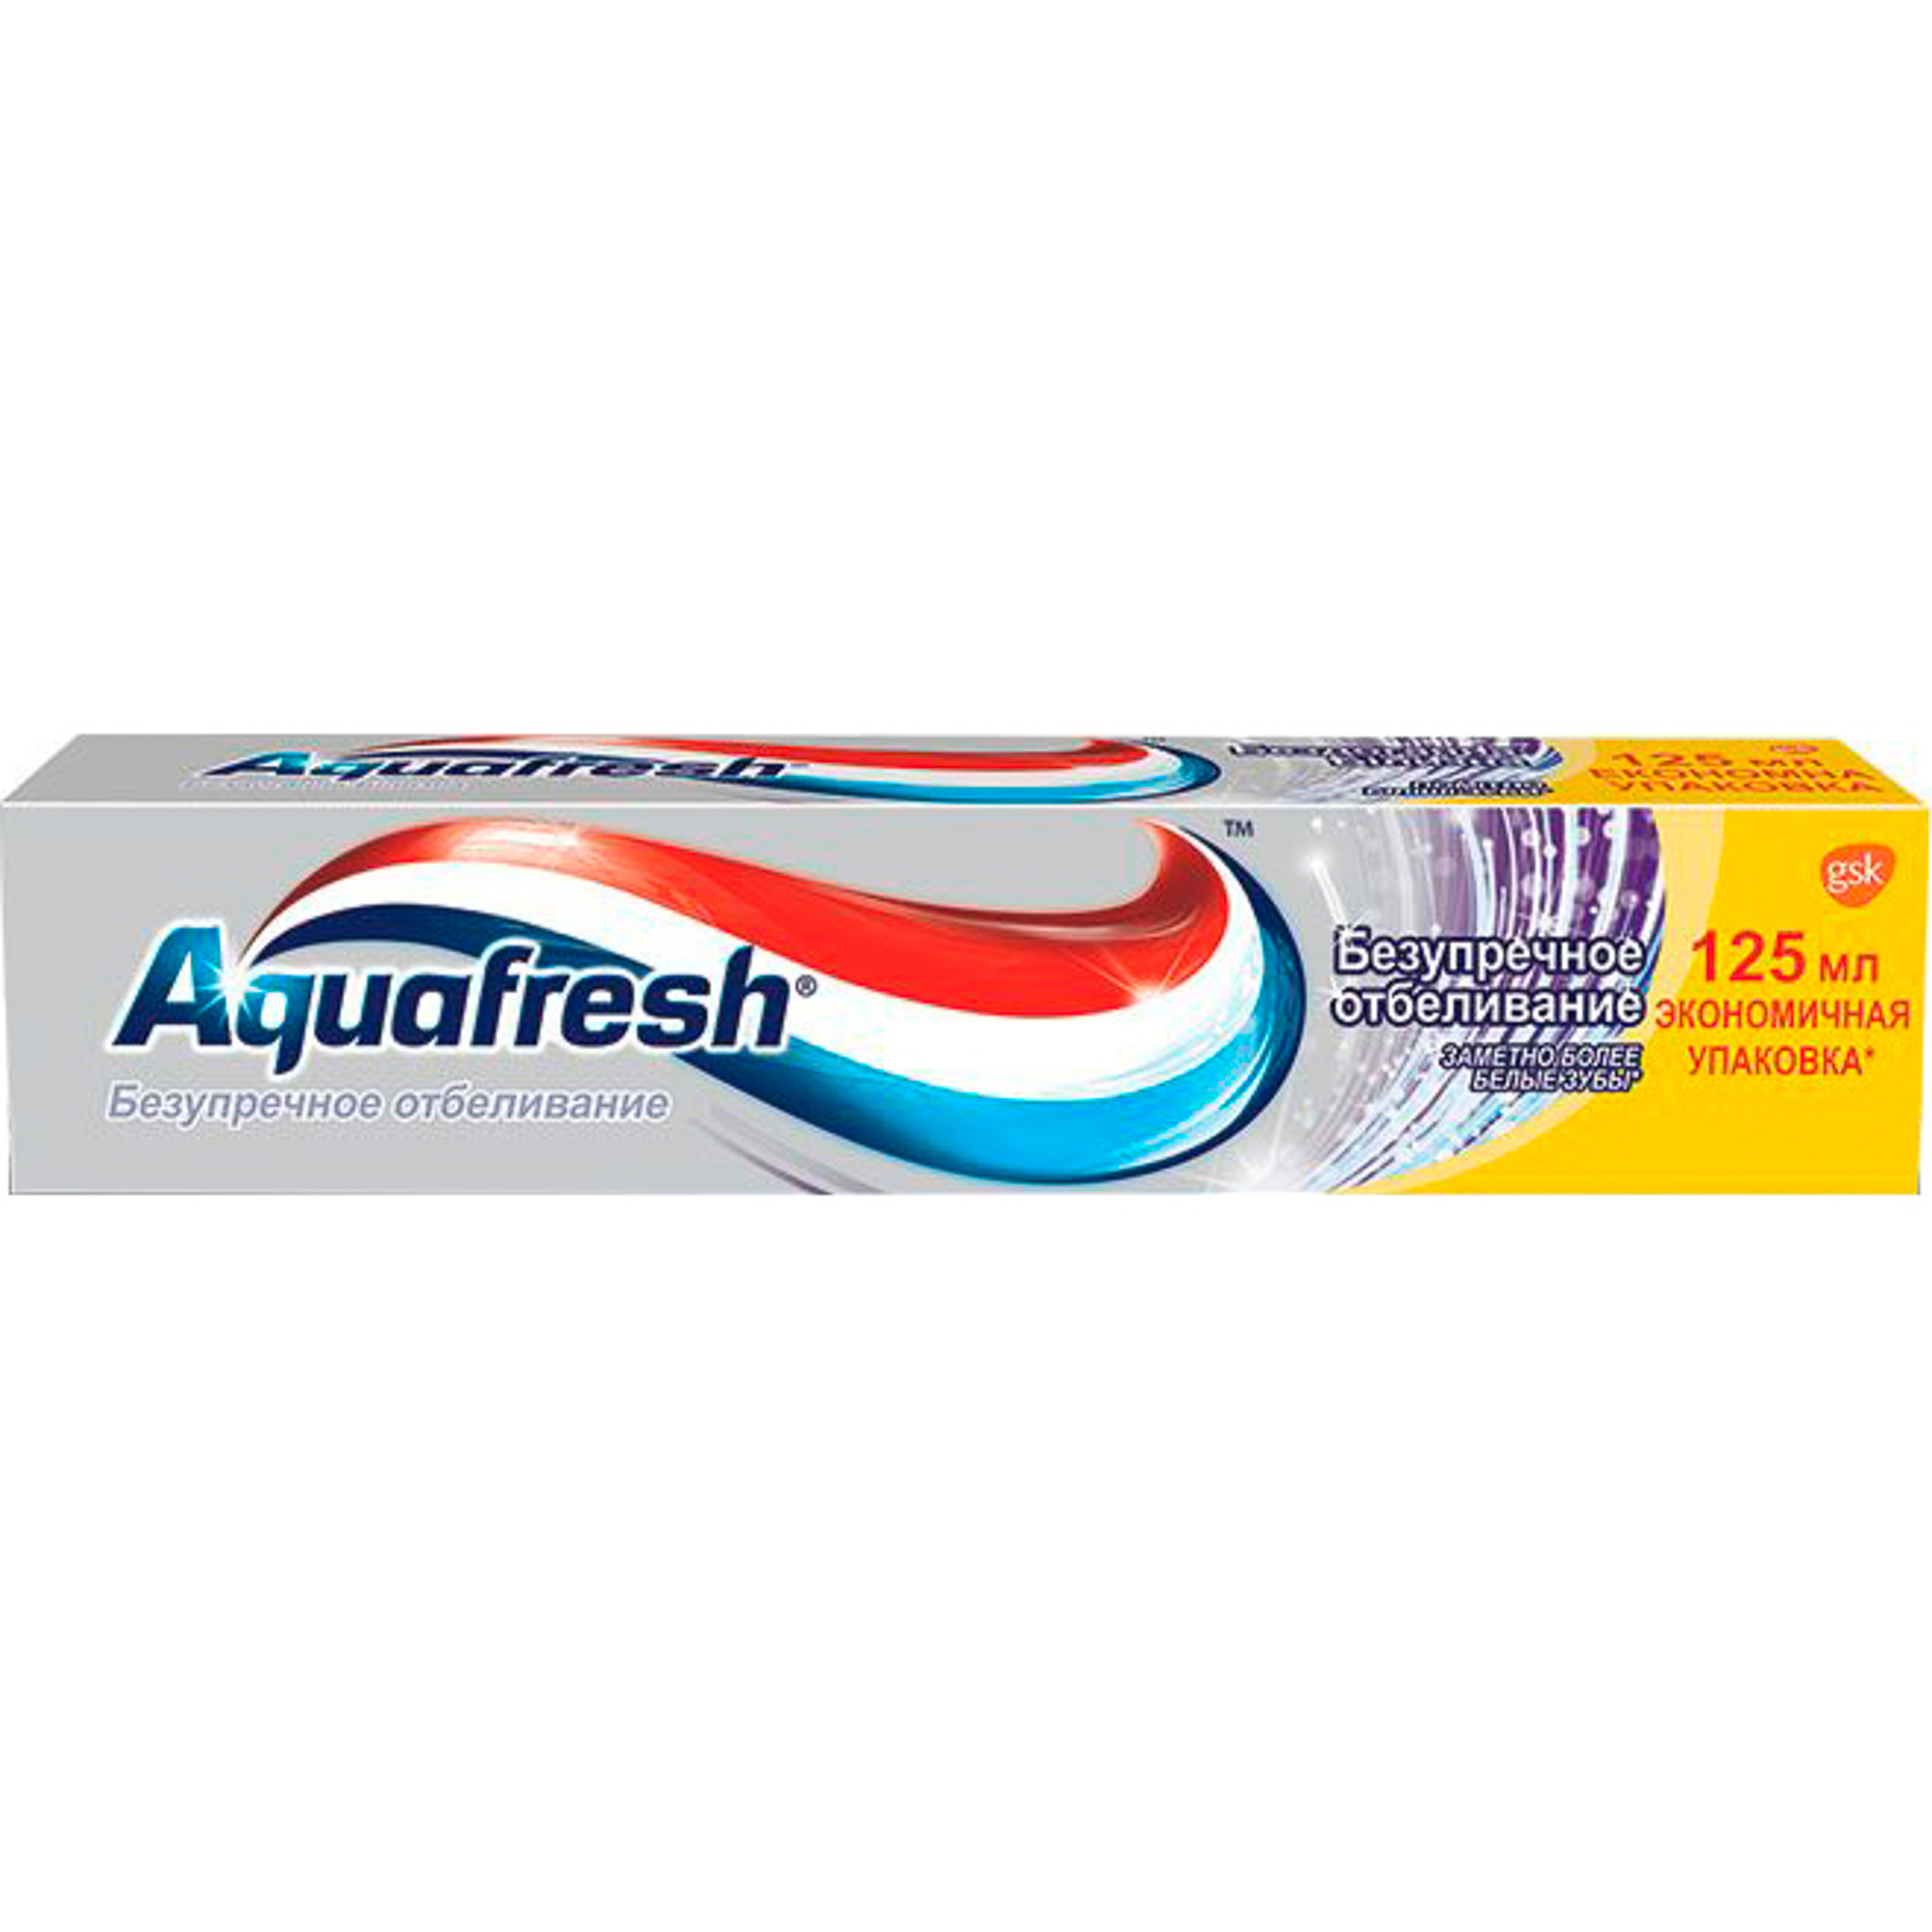 Зубная паста Aquafresh Безупречное отбеливание 125 мл, размер 21х4х4 см 24/70169 - фото 1